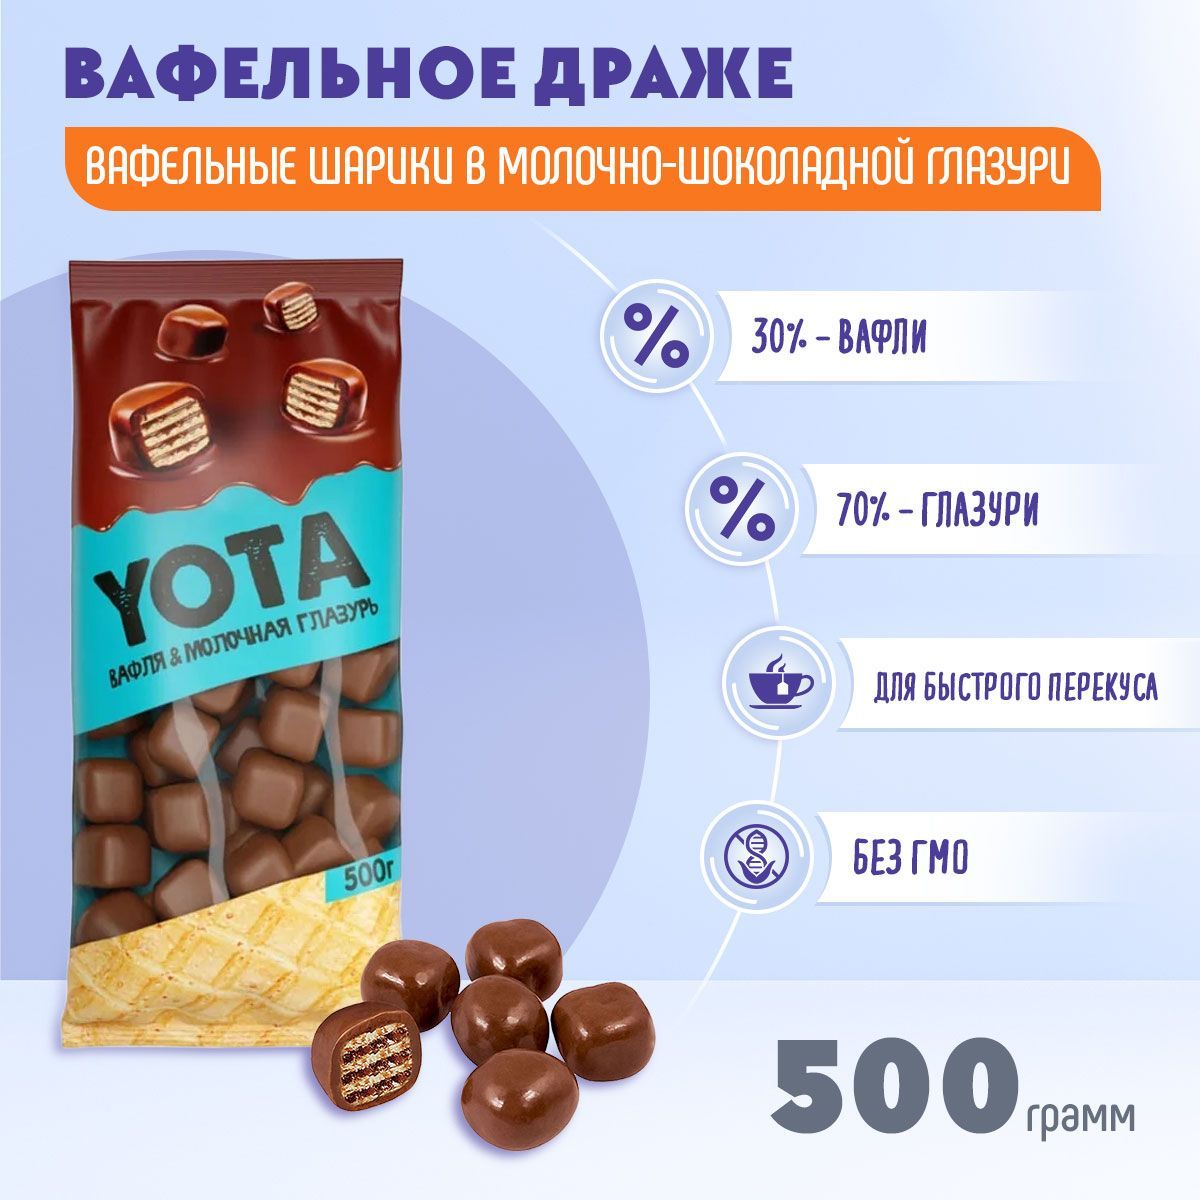 Вафельные драже. Yota вафли в шоколаде. Yota вафля и молочная глазурь. Драже KDV Yota вафля в молочно-шоколадной глазури. Вафля Yota в молочно-шоколадной.